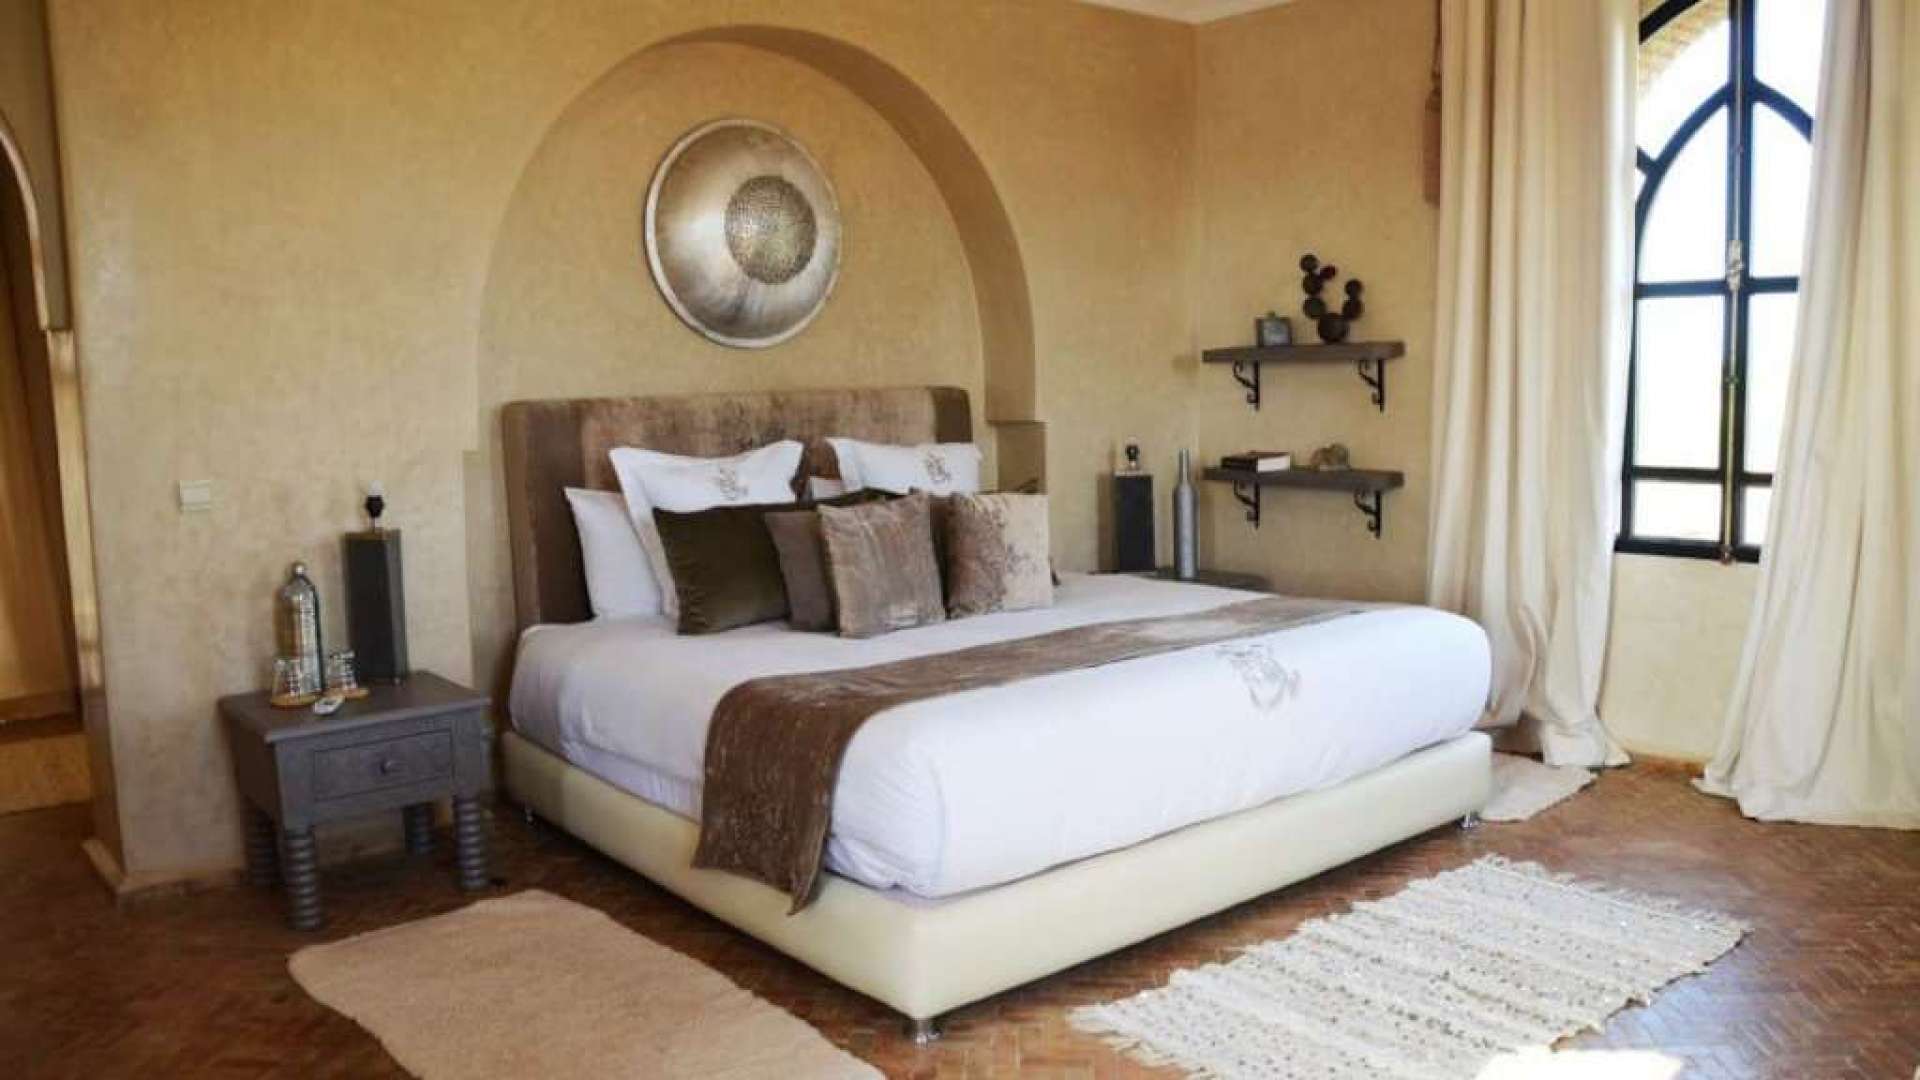 Vente,Villa,Vente villa d’hôtes de 7 suites avec tennis et piscine chauffée à 30 min. du centre de Marrakech,Marrakech,Route d'Ouarzazate